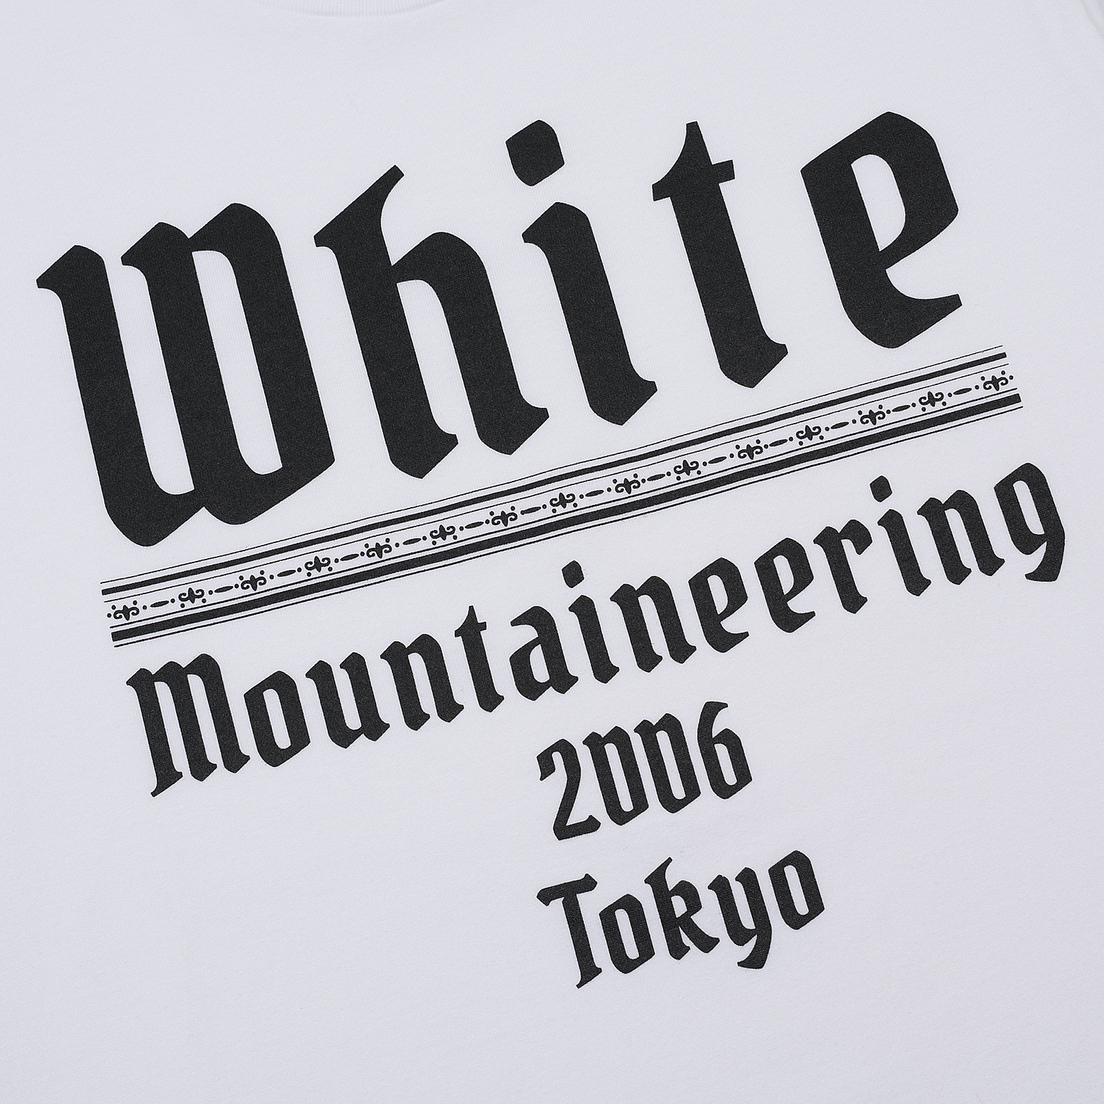 White Mountaineering Мужская футболка Printed White Mountaineering 2006 Tokyo